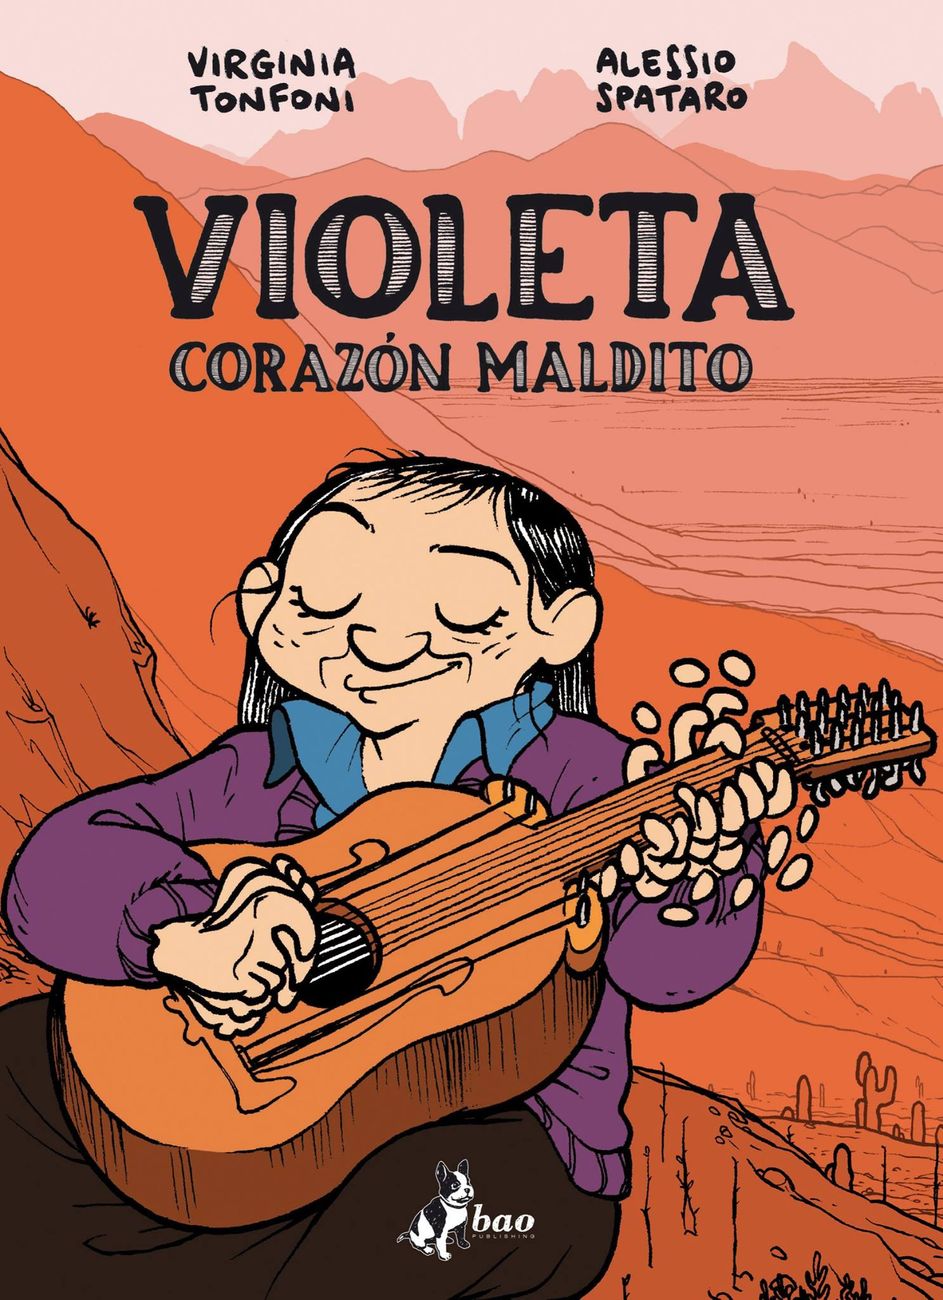 Virginia Tonfoni & Alessio Spataro – Violeta. Corazon Maldito (Bao Publishing, Milano 2017). Cover